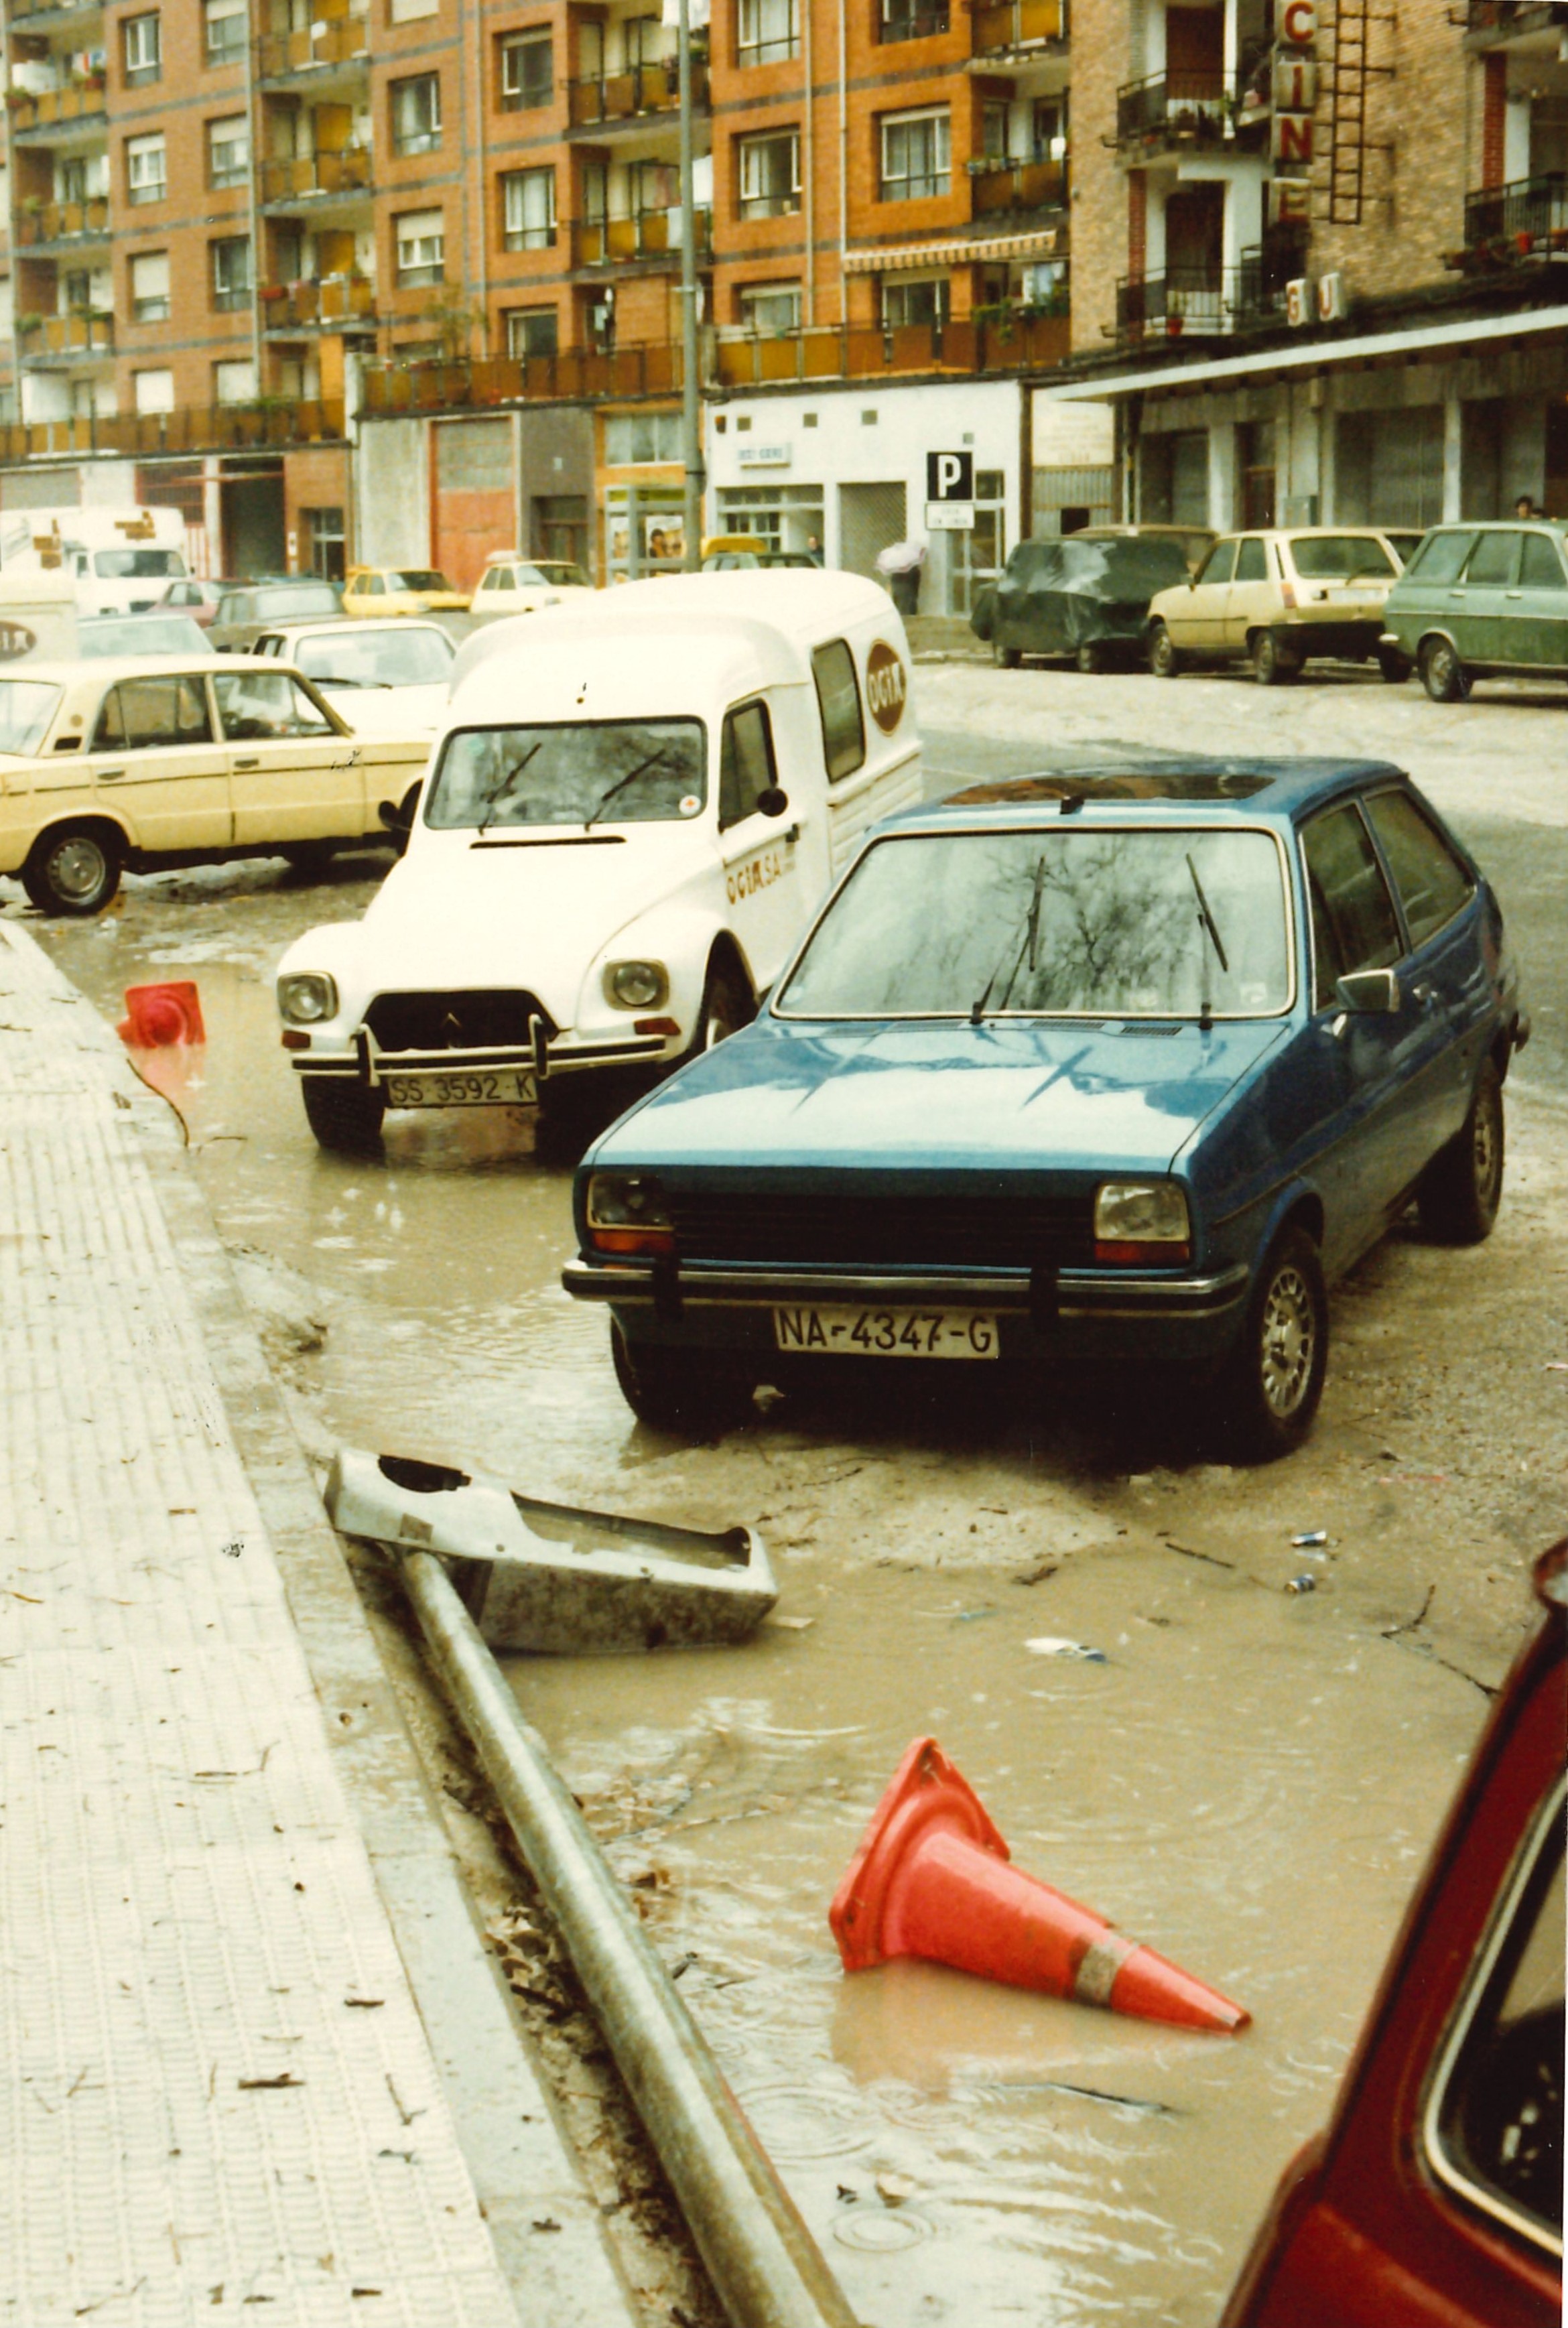 Inundaciones Ermua 1983, Avenida Gipuzkoa. Uholdeak Ermuan 1983.urtean, Gipuzkoa Etorbidean.